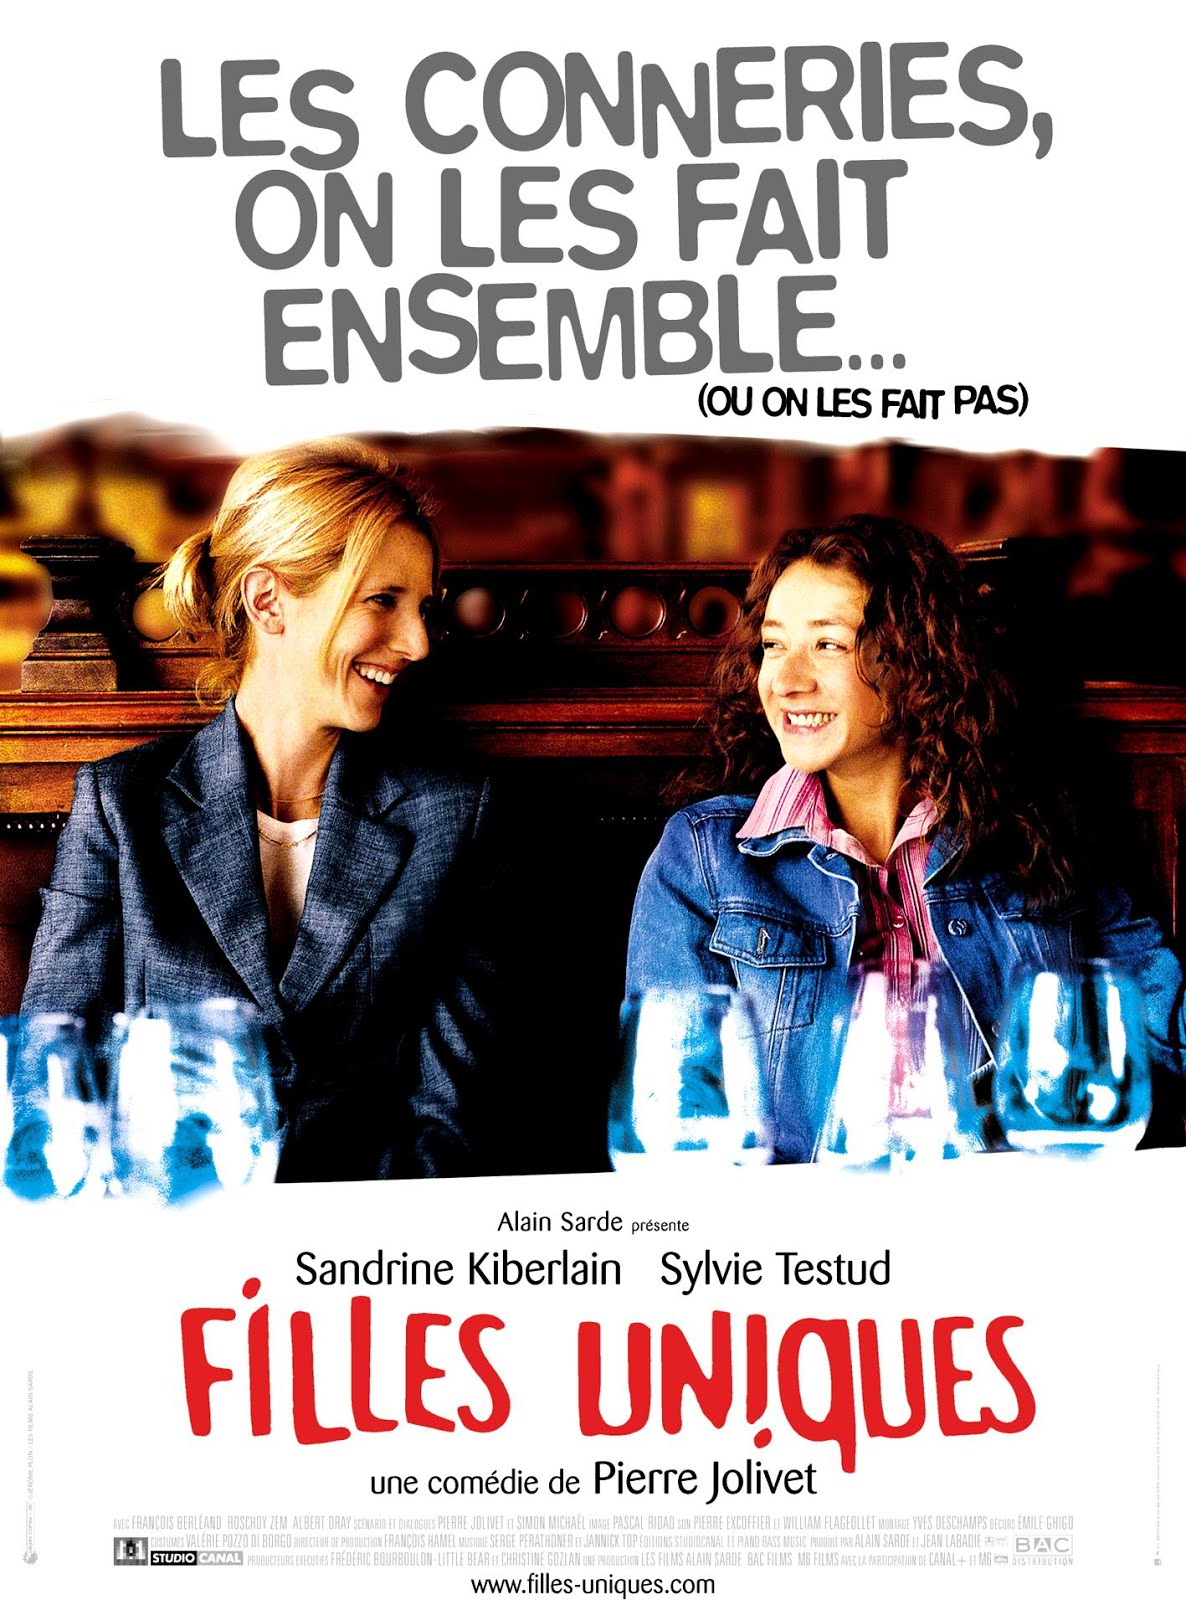 Filles uniques (2002) Pierre Jolivet - Filles uniques